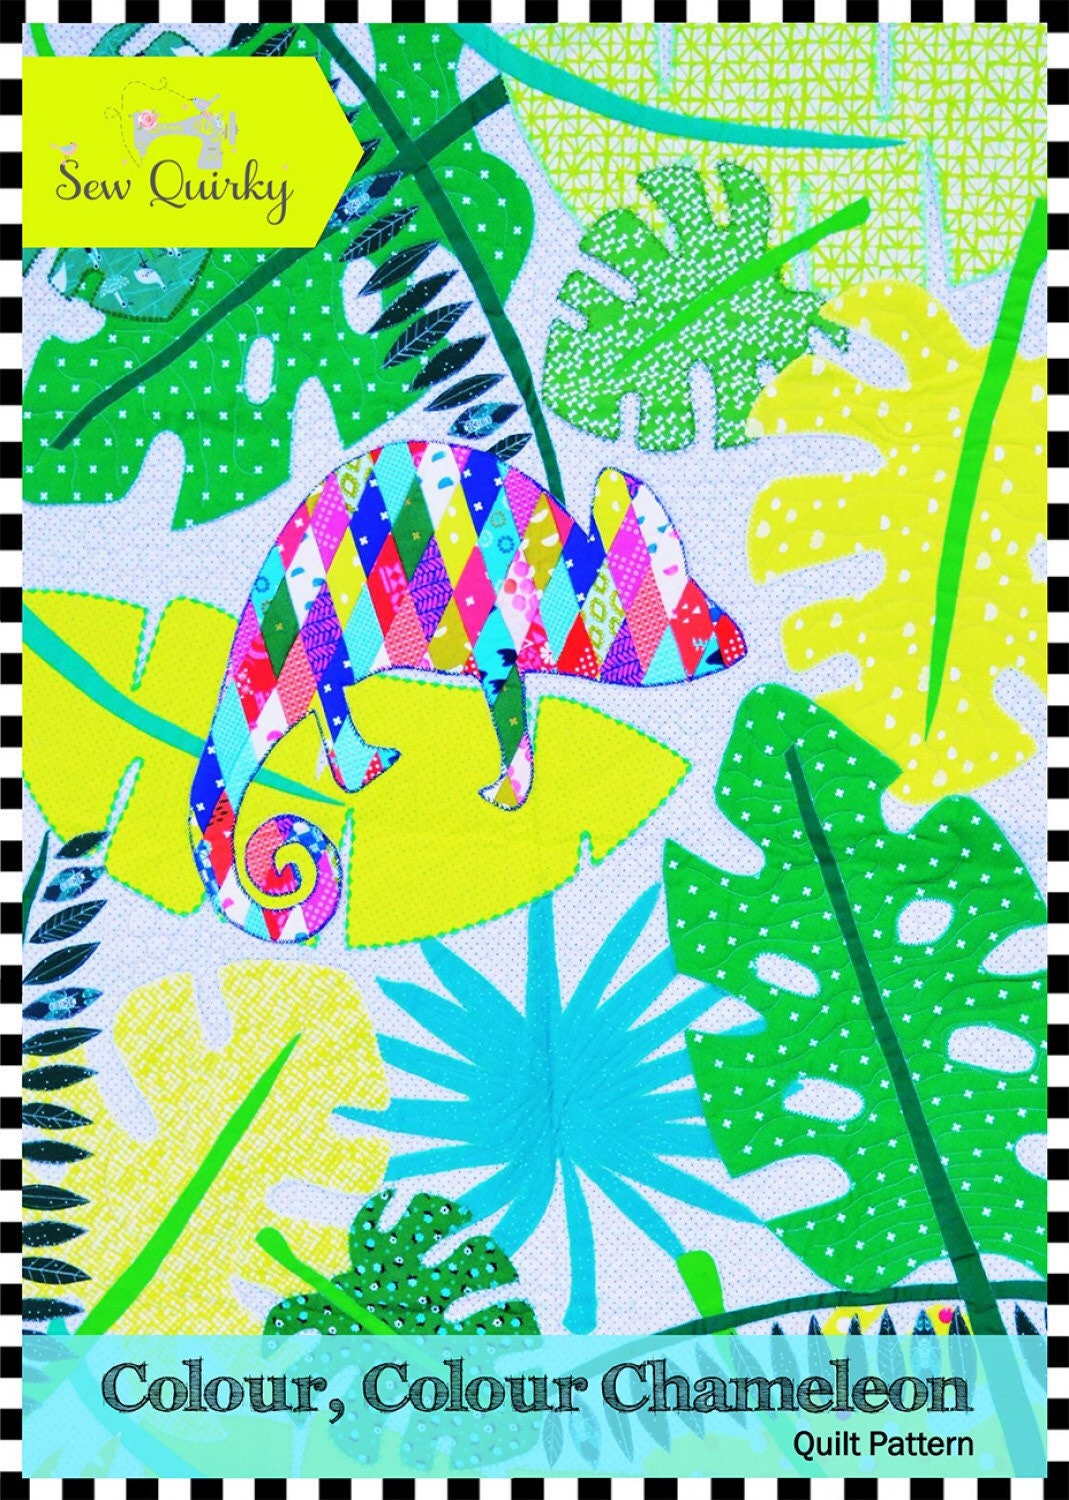 Colour, Colour, Chameleon Quilt Pattern - Sew Quirky - Mandy Murray - Appliqué Pattern